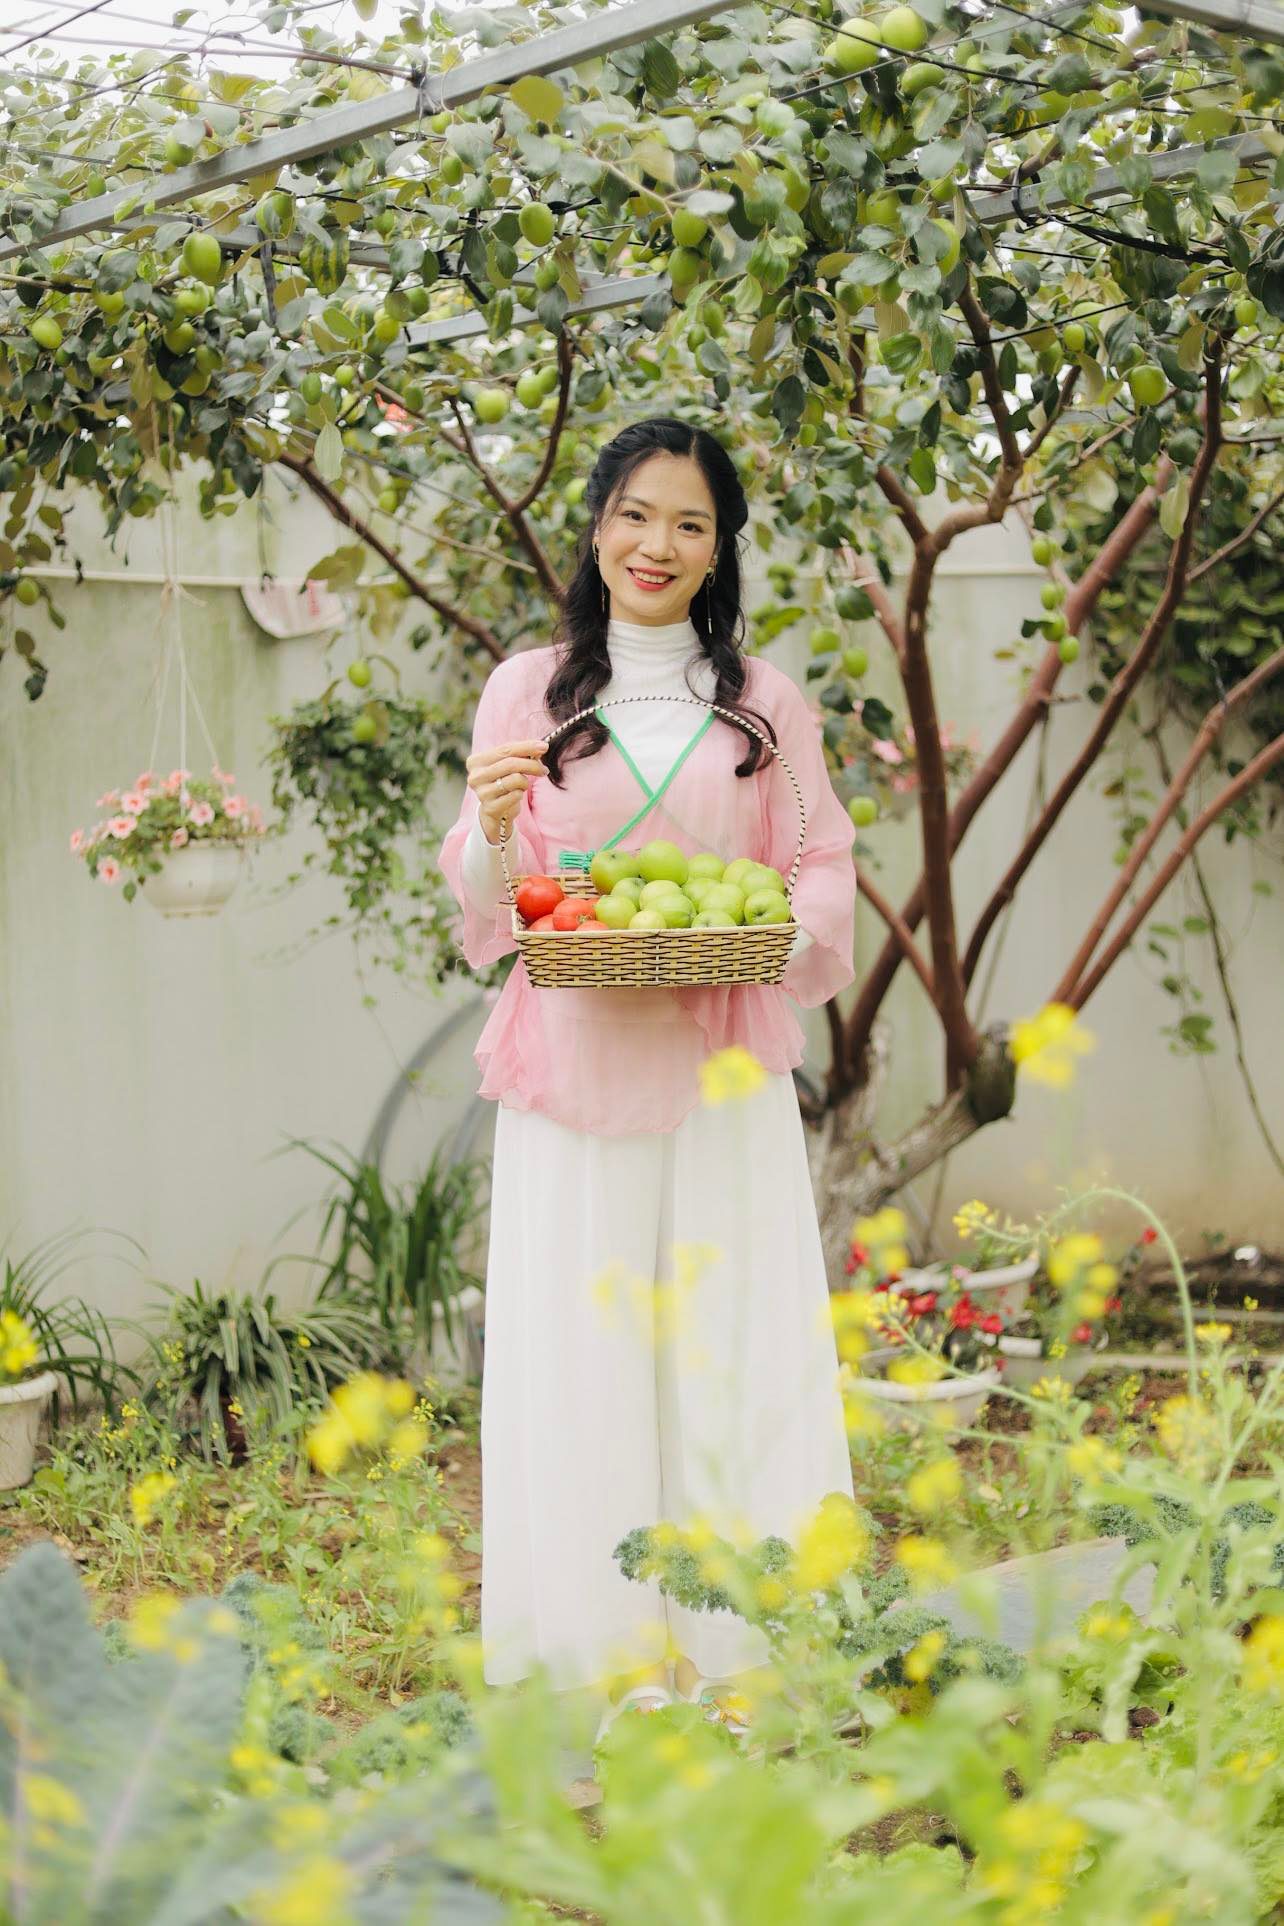 Khu vườn rộng 300m2 sum suê rau trái, mùa nào thức nấy, tươi tốt um tùm của mẹ đảm 4 con ở Quảng Ninh- Ảnh 1.